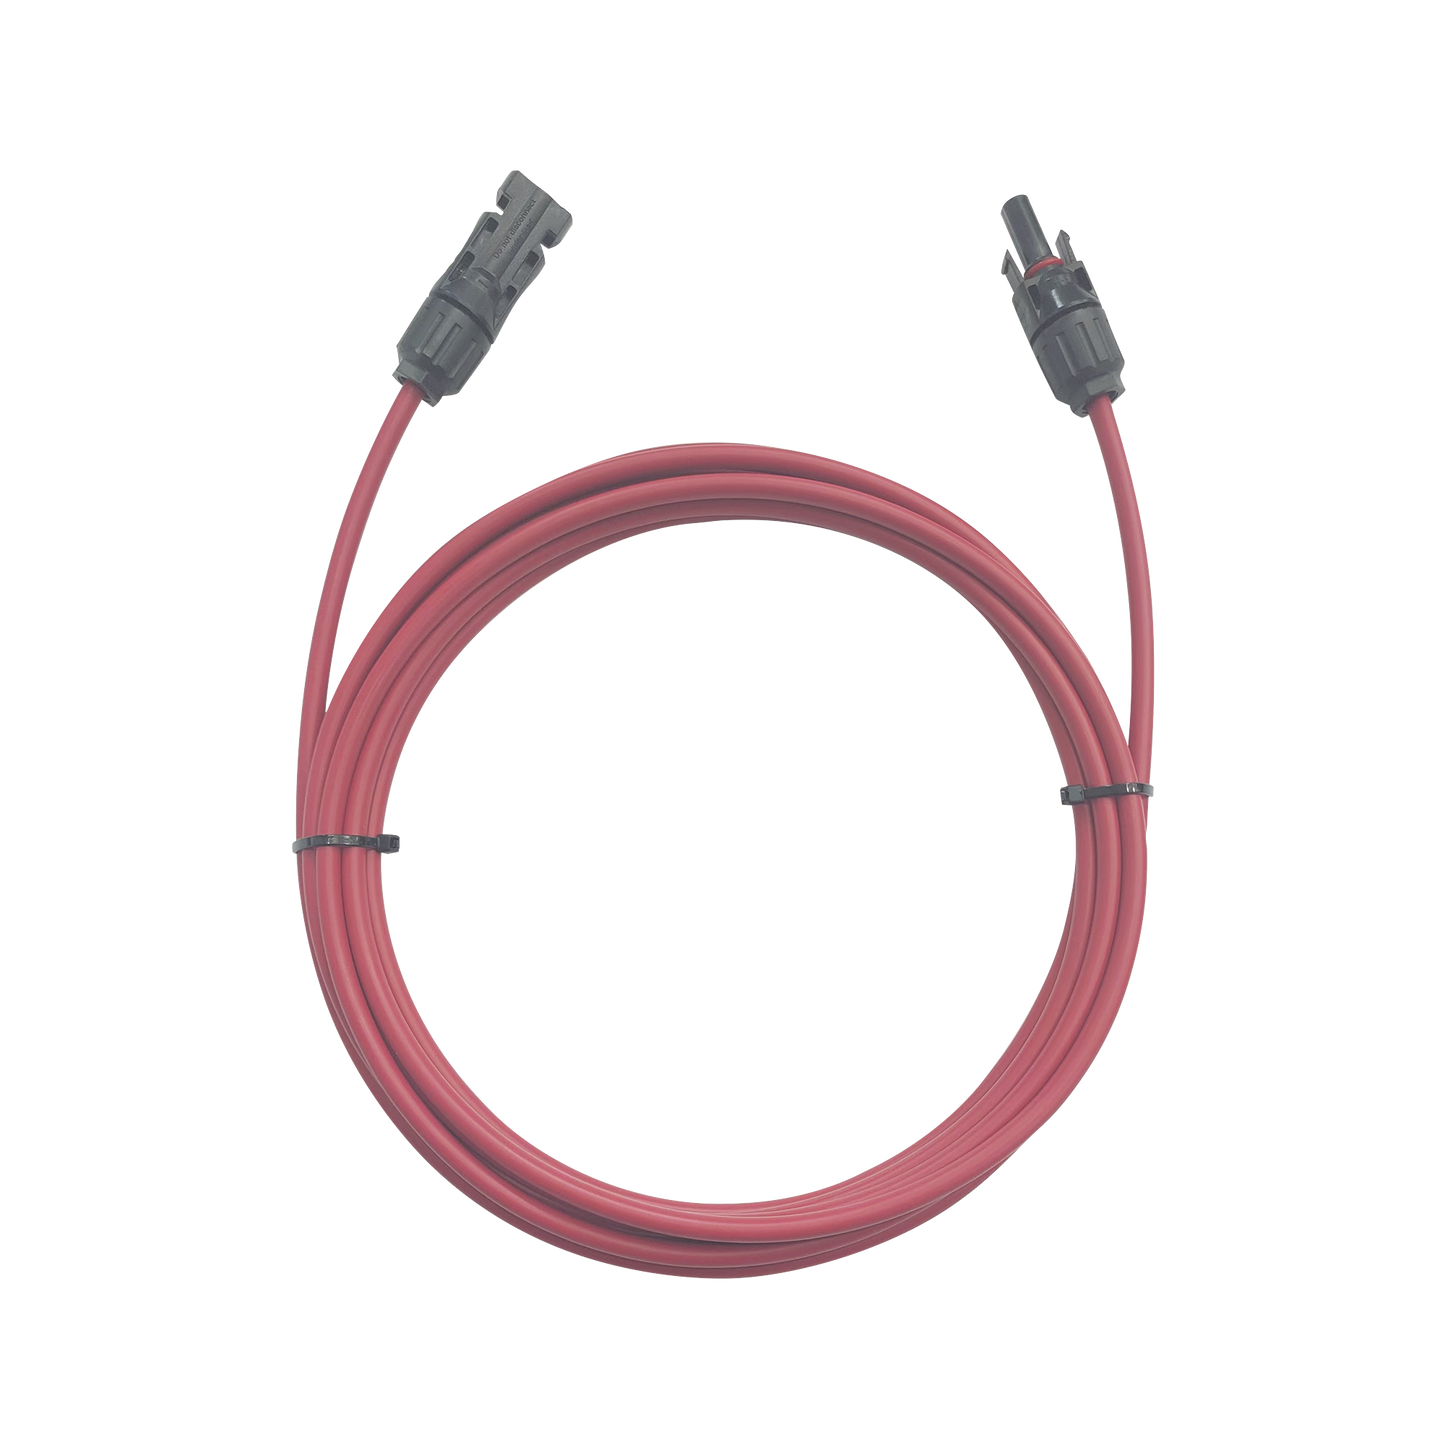 Cable Fotovoltaico / 1 metro / Color Rojo / Calibre 10 AWG / Terminal MC4-Macho y Hembra en  ambos extremos